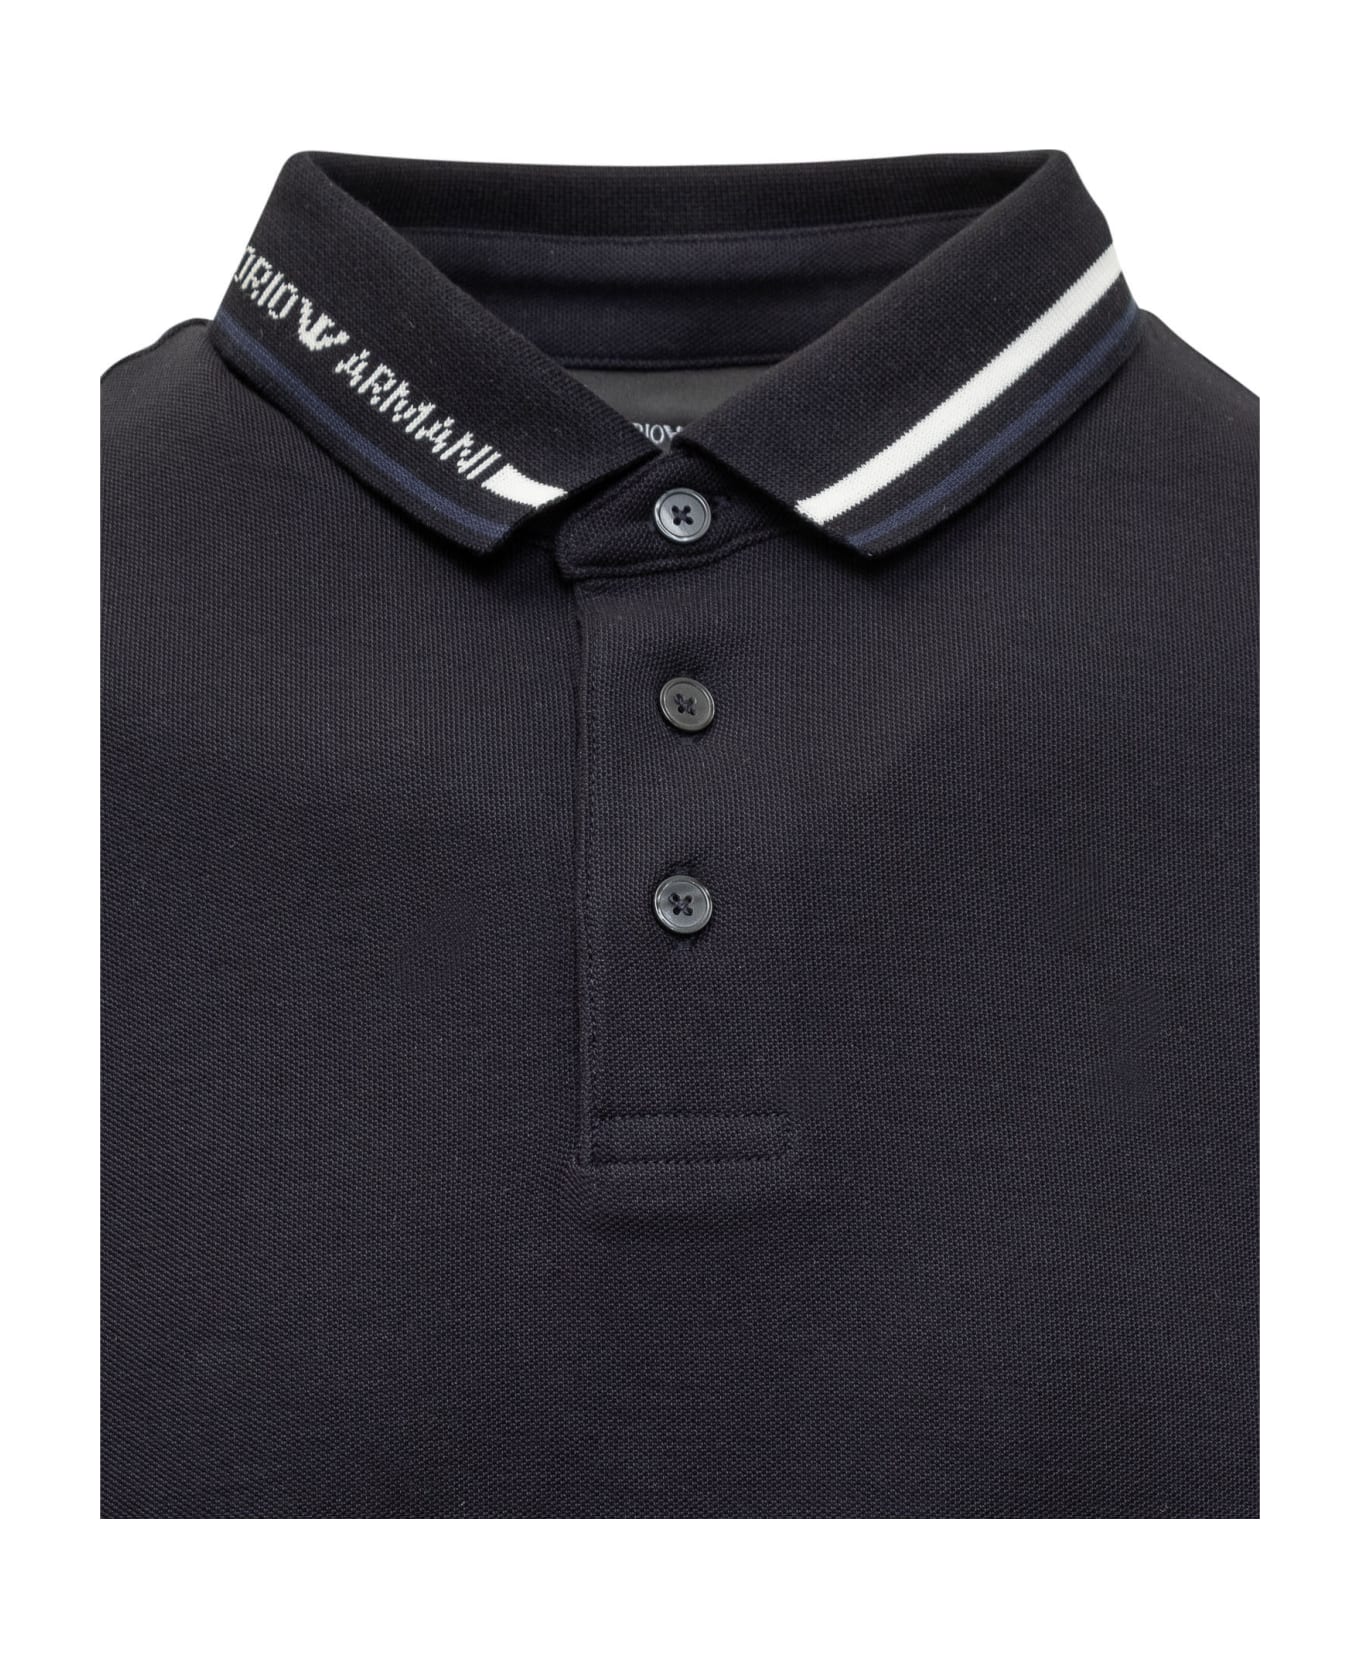 Emporio Armani Polo Shirt With Logo - NECK NAVY